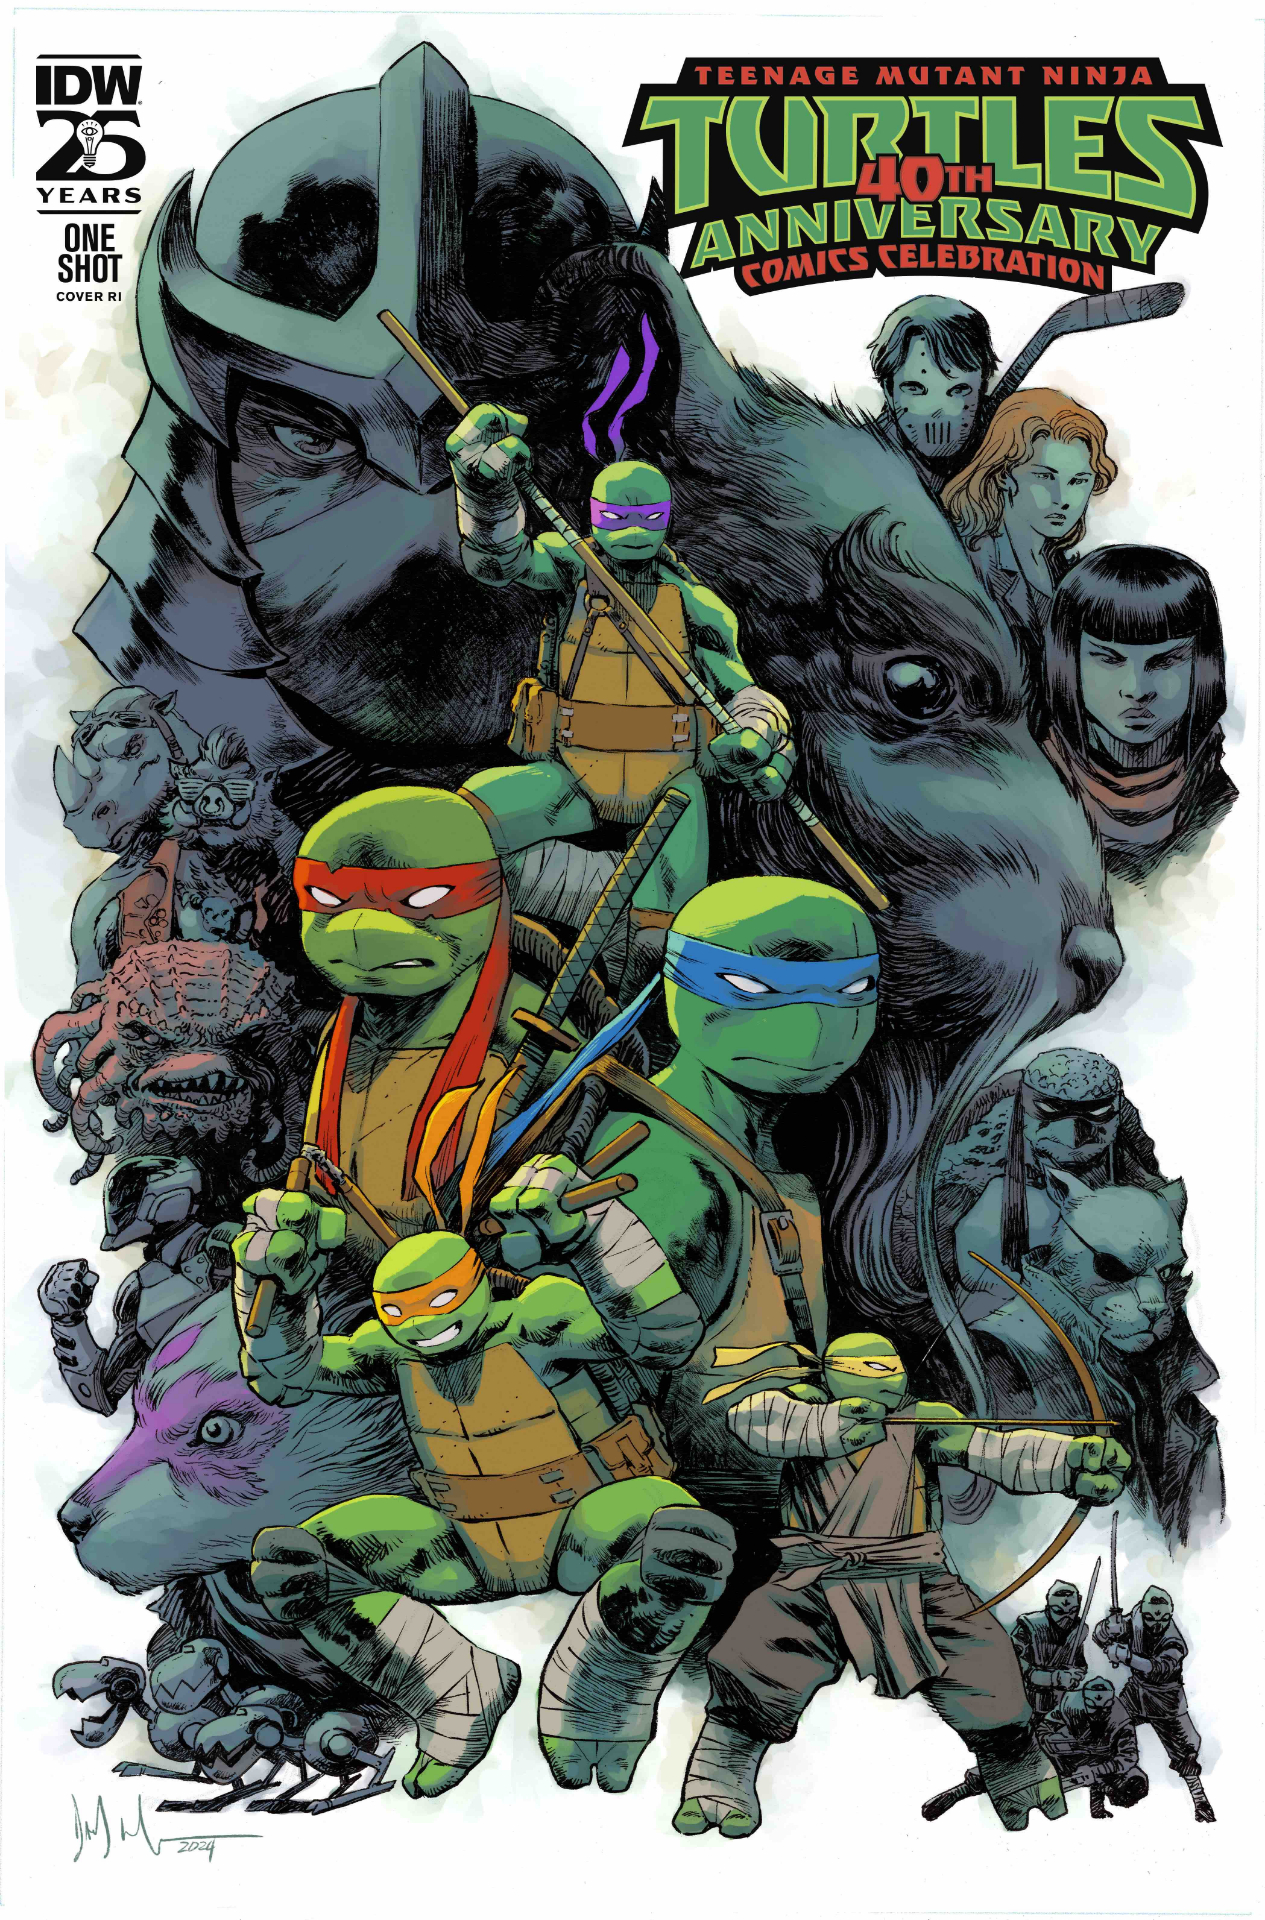 Teenage Mutant Ninja Turtles: 40th Anniversary Celebration